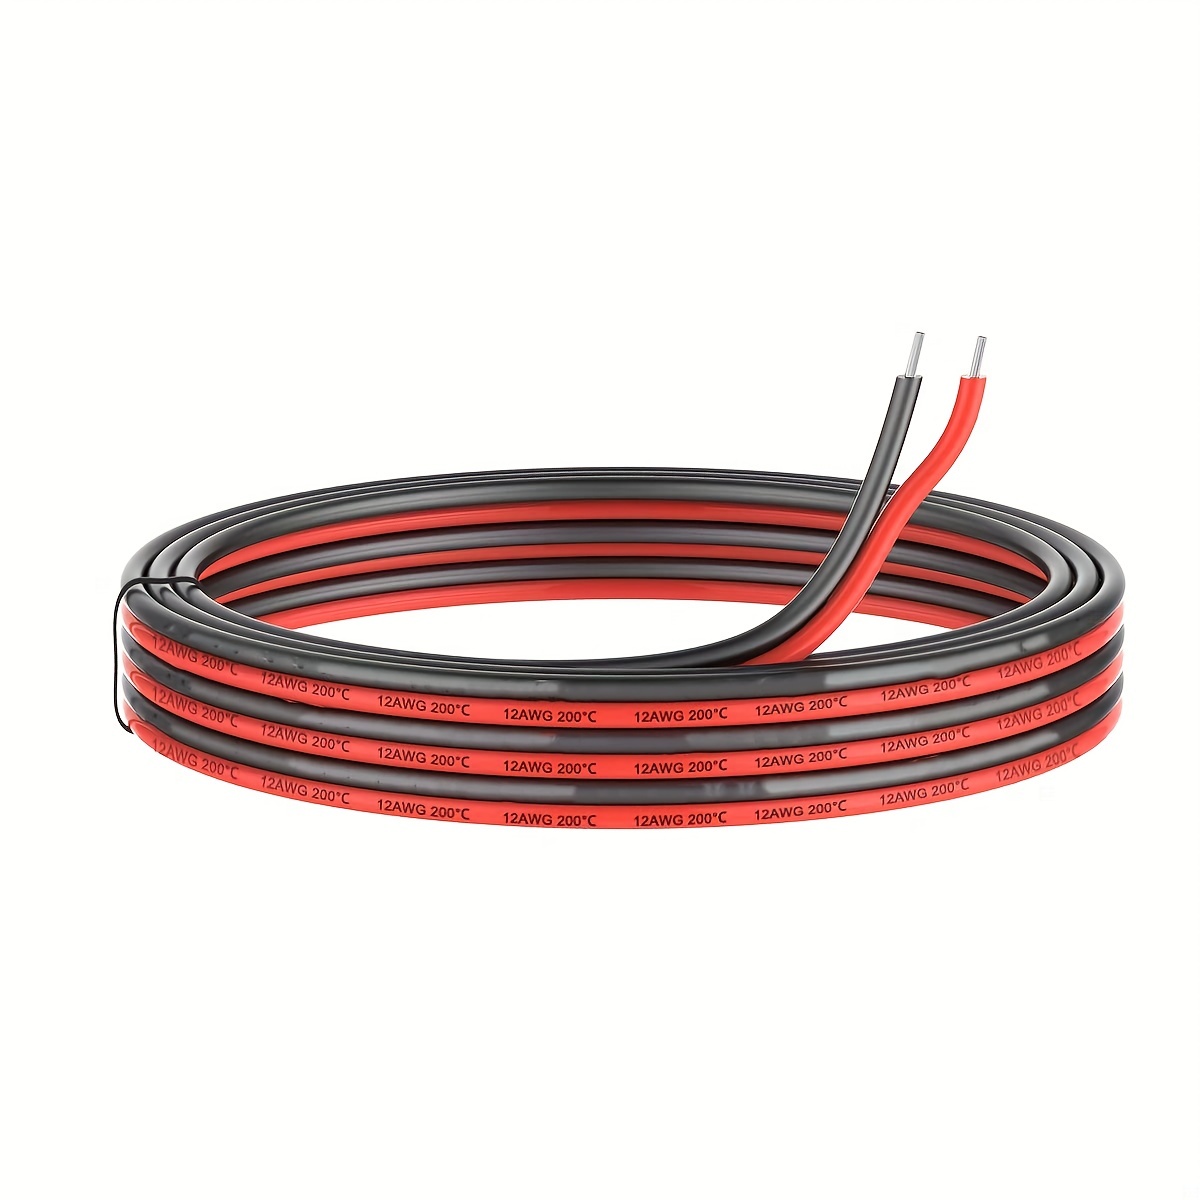 Cable paralelo para altavoces rojo y negro rollo de 10 metros